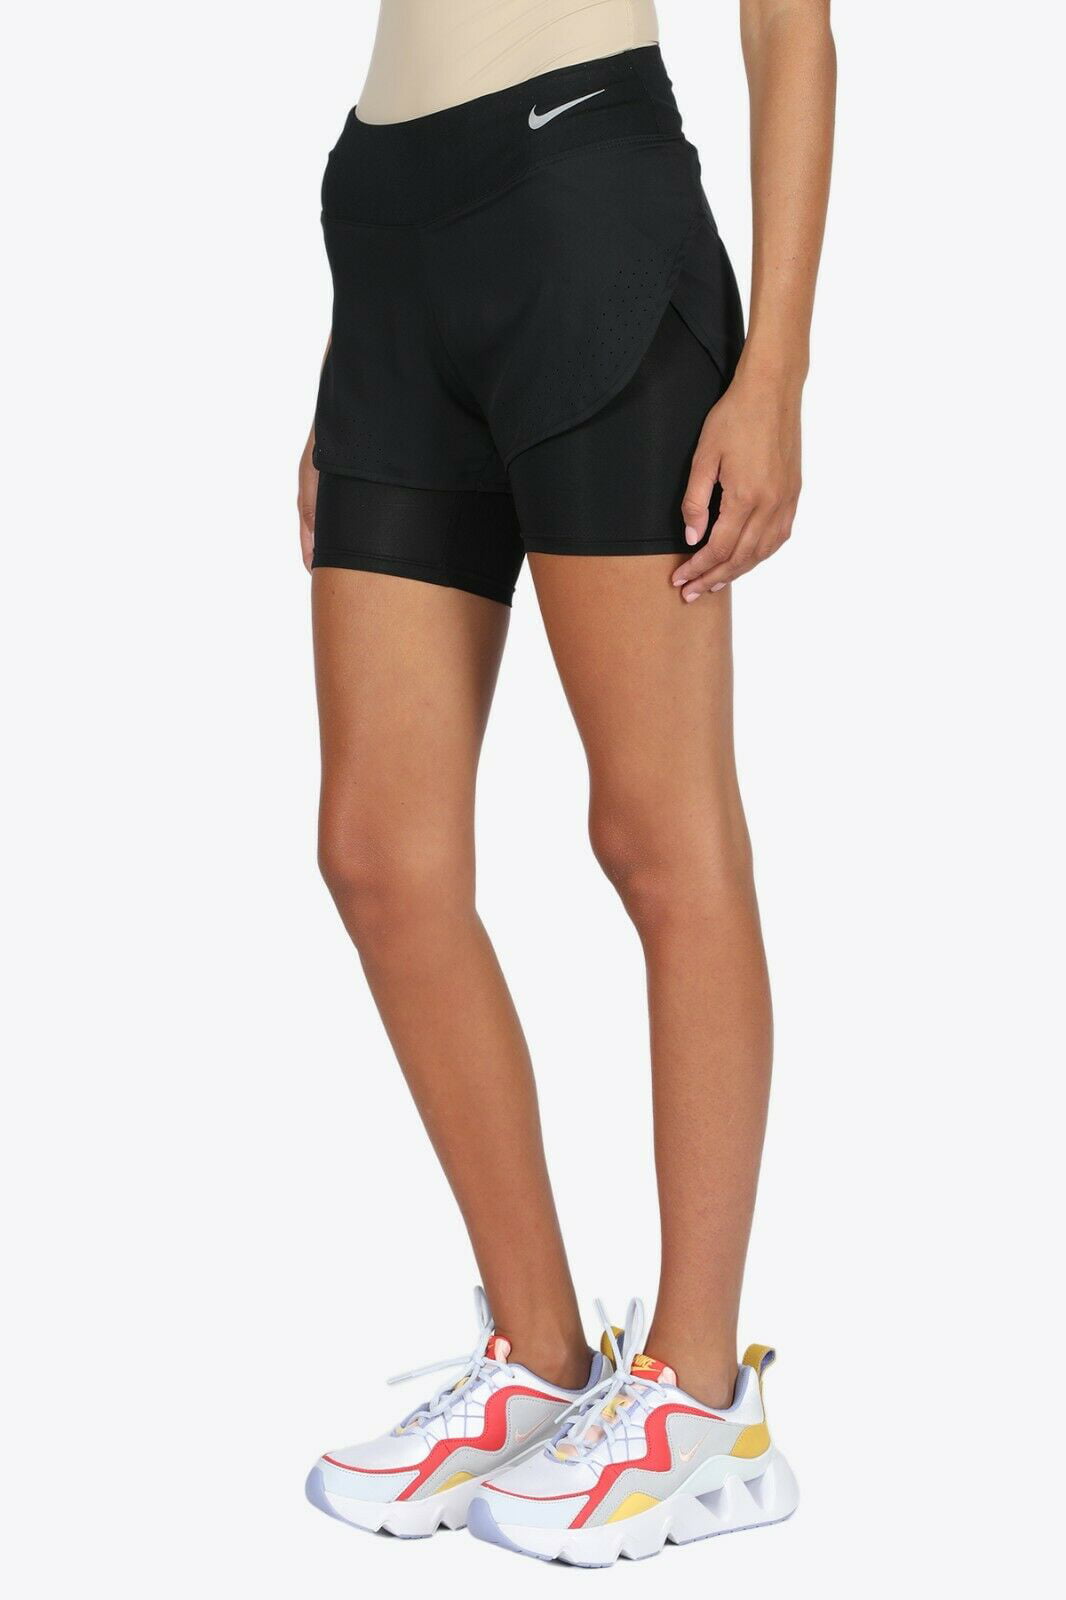 Nike Women's 2-in-1 Running Shorts Size XL Walmart.com